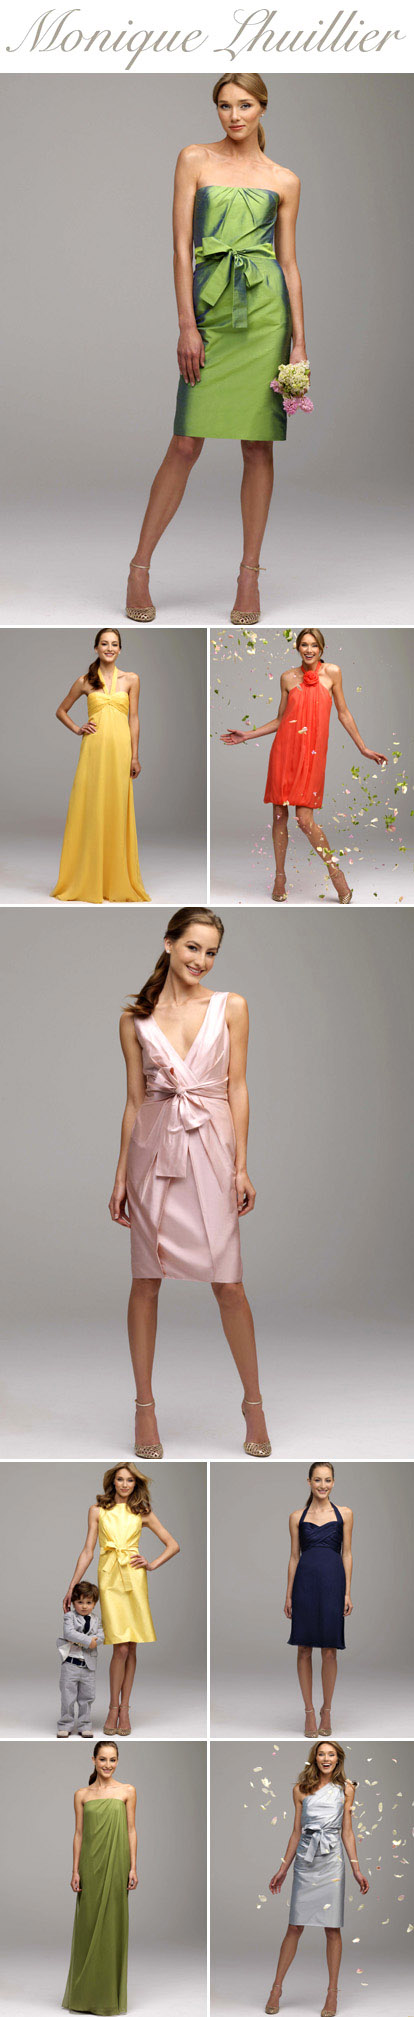 Monique Lhuillier bridesmaids dress collection